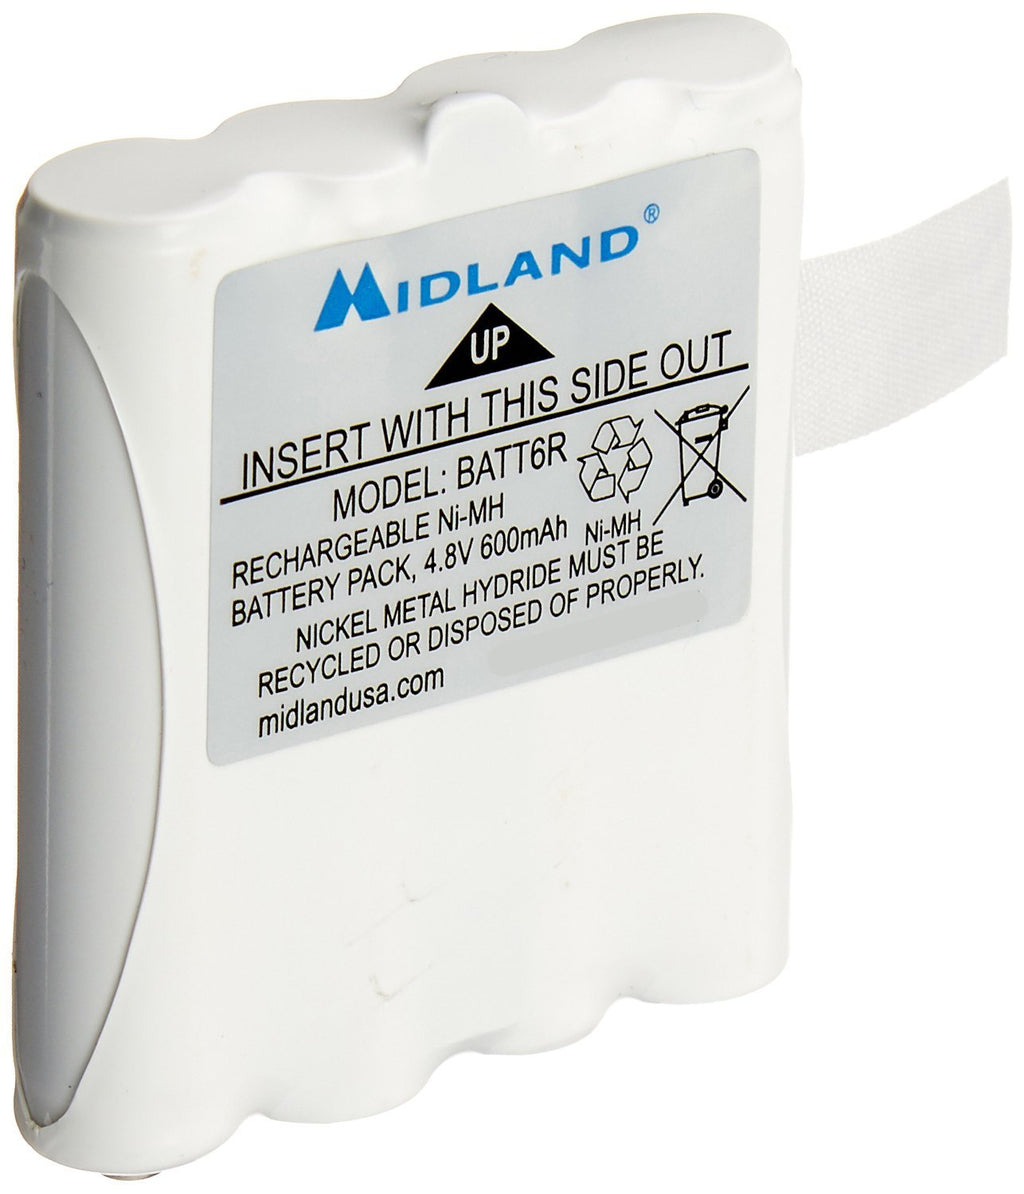 [AUSTRALIA] - Midland AVP8 Nickel Metal Hydride Battery Packs for LXT Series GMRS Radios - Pair 2-Pack 